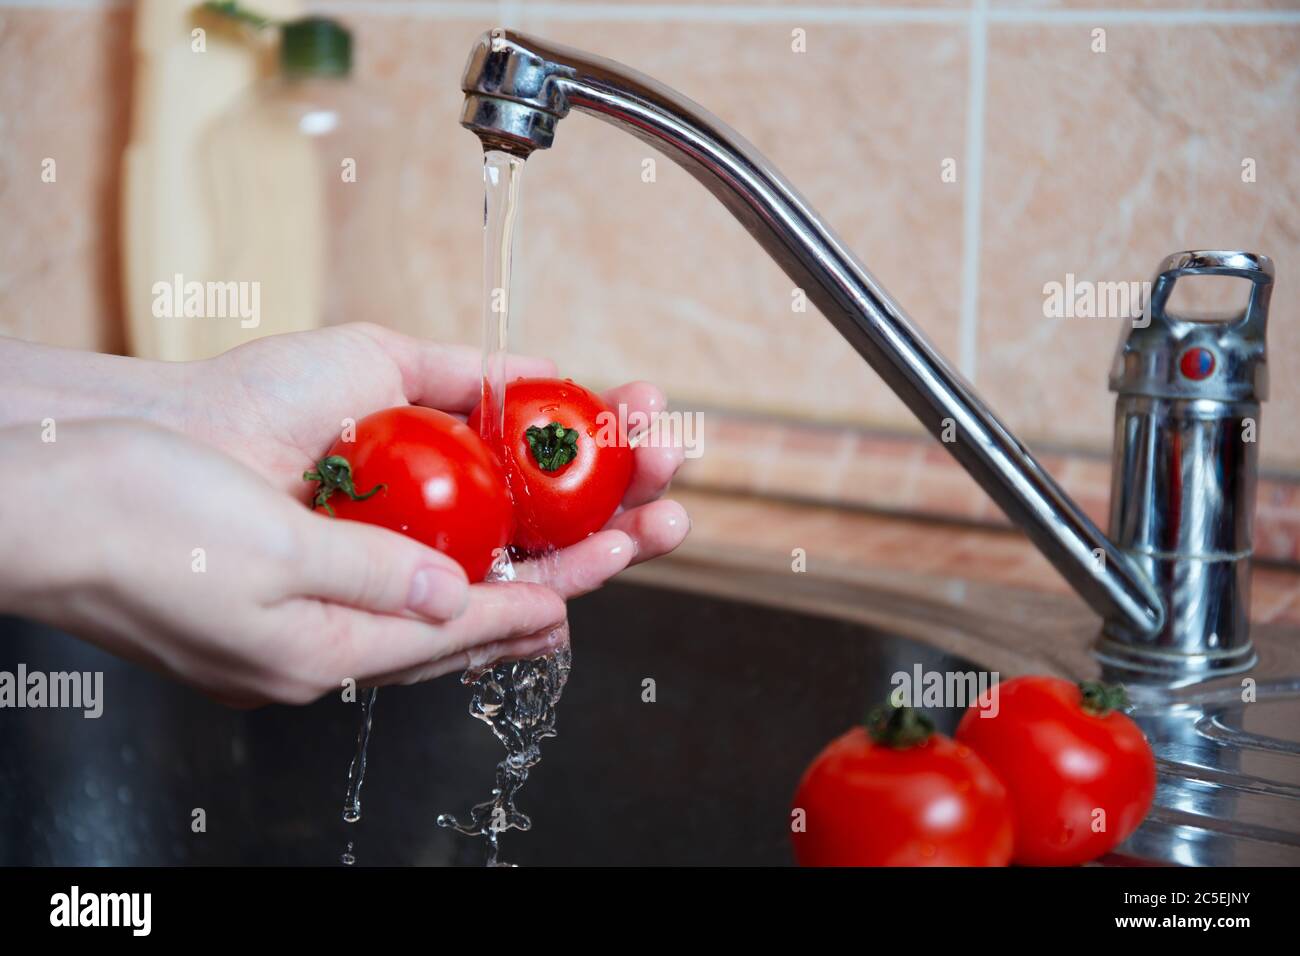 Verduras frescas o tomates jugosos bajo el agua corriente. Las manos femeninas lavan verduras frescas. Concepto de higiene y cuidado personal. Foto de stock